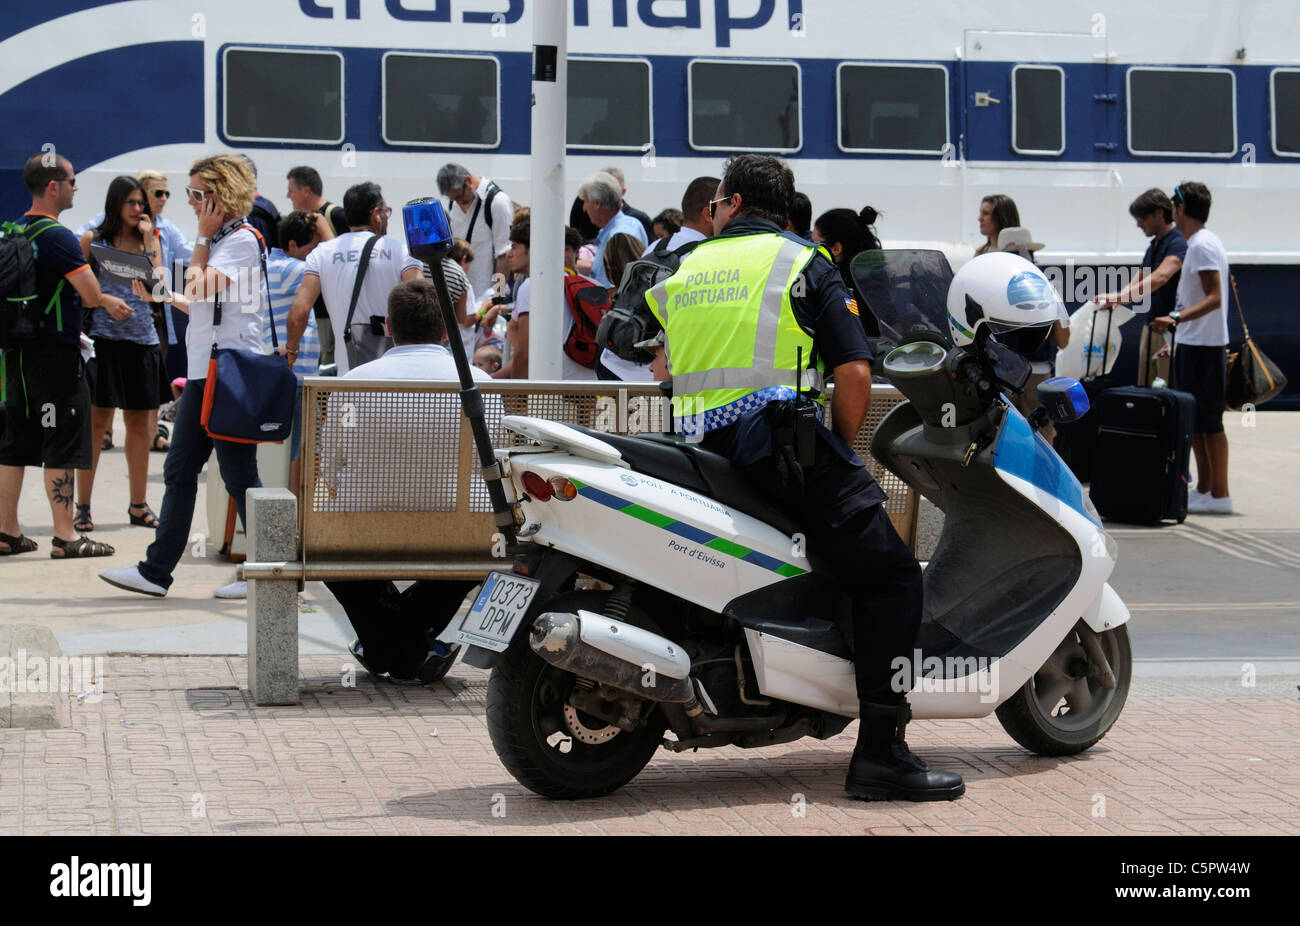 Port-Polizist in Eivissa Ibiza einen spanischen Mittelmeer-Insel Fähre Passagiere beobachten Stockfoto